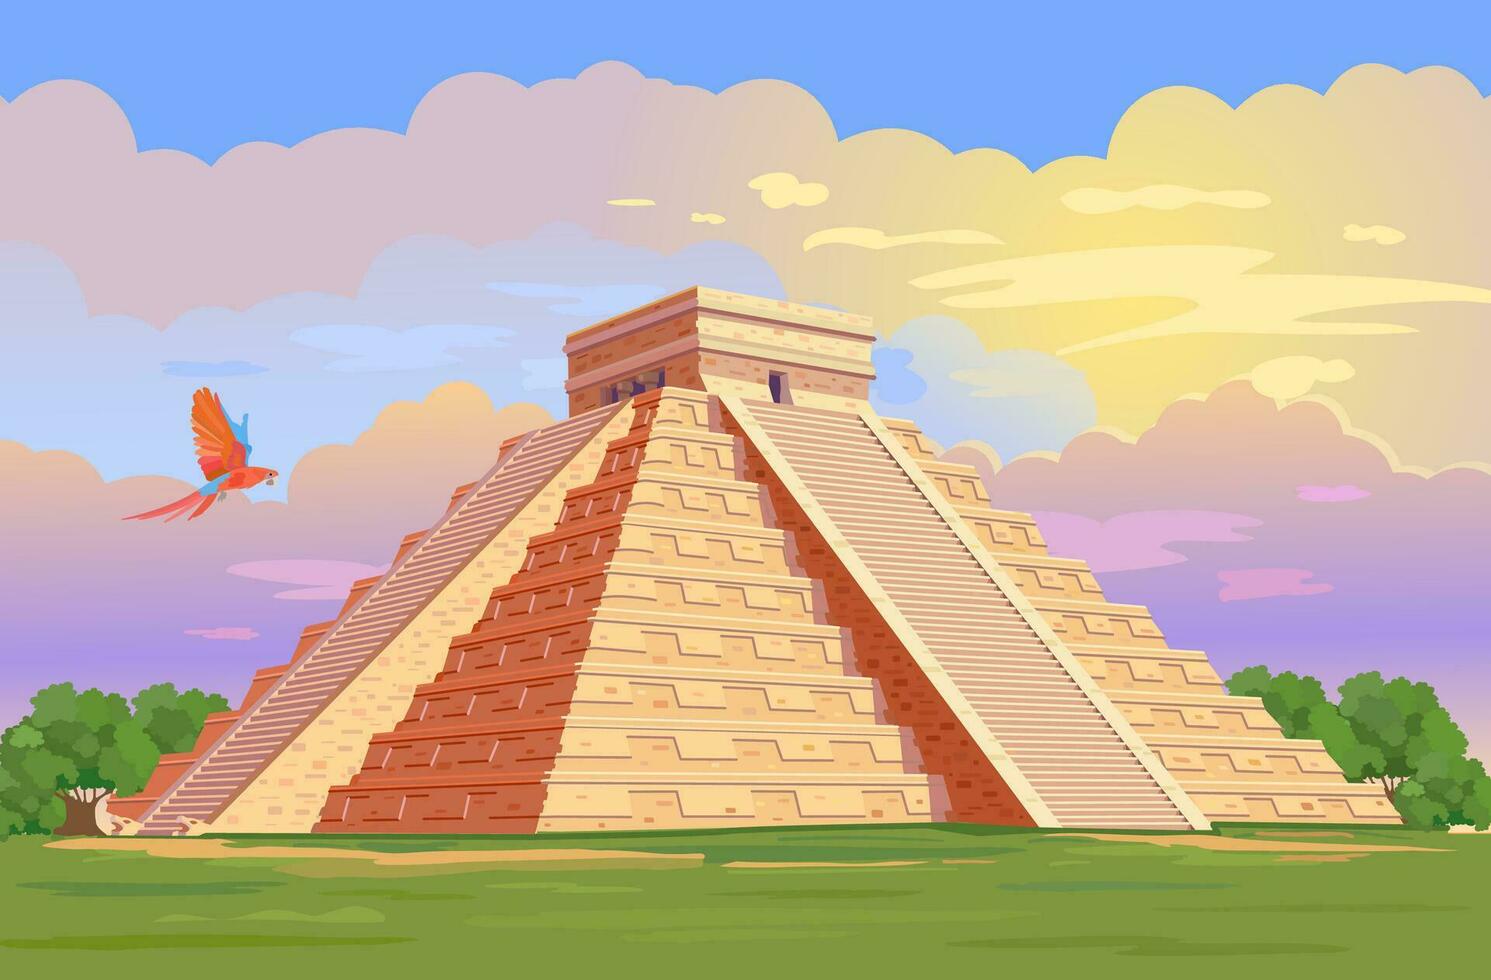 el castillo el kukulkan templo de Chichen itzá, maya pirámide en yucatán, México. vector ilustración de antiguo maya pirámides en el selva en tiempo de día